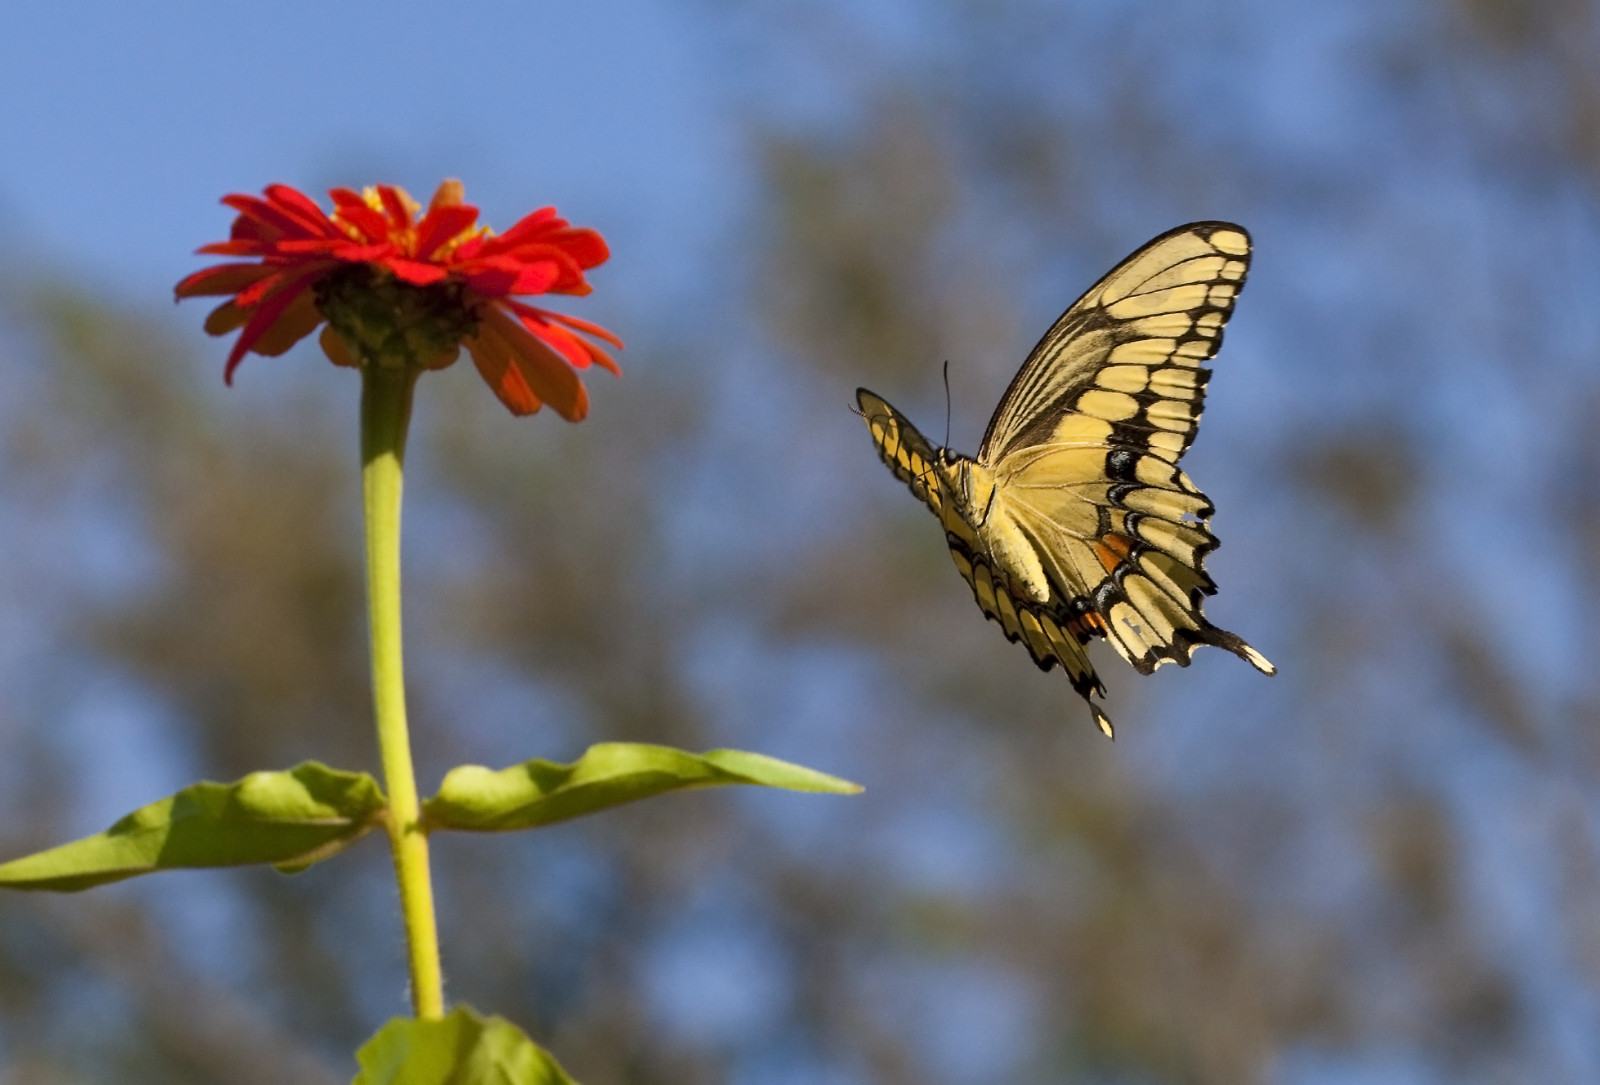 Hình ảnh bướm bay đến hoa